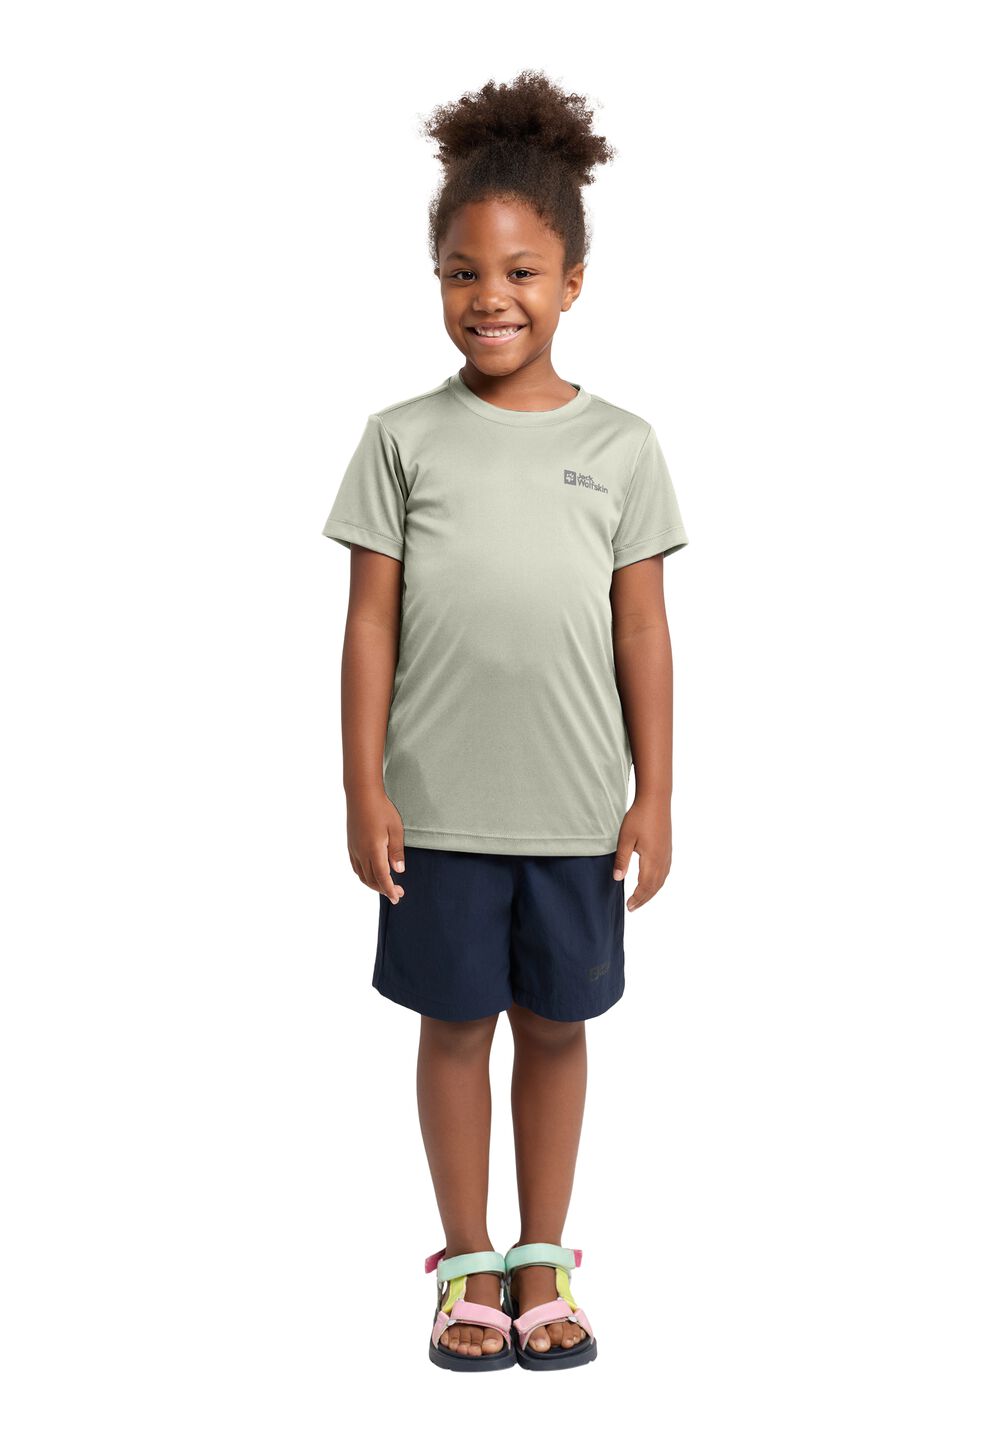 Jack Wolfskin Active Solid T-Shirt Kids Functioneel shirt Kinderen 152 mint leaf mint leaf